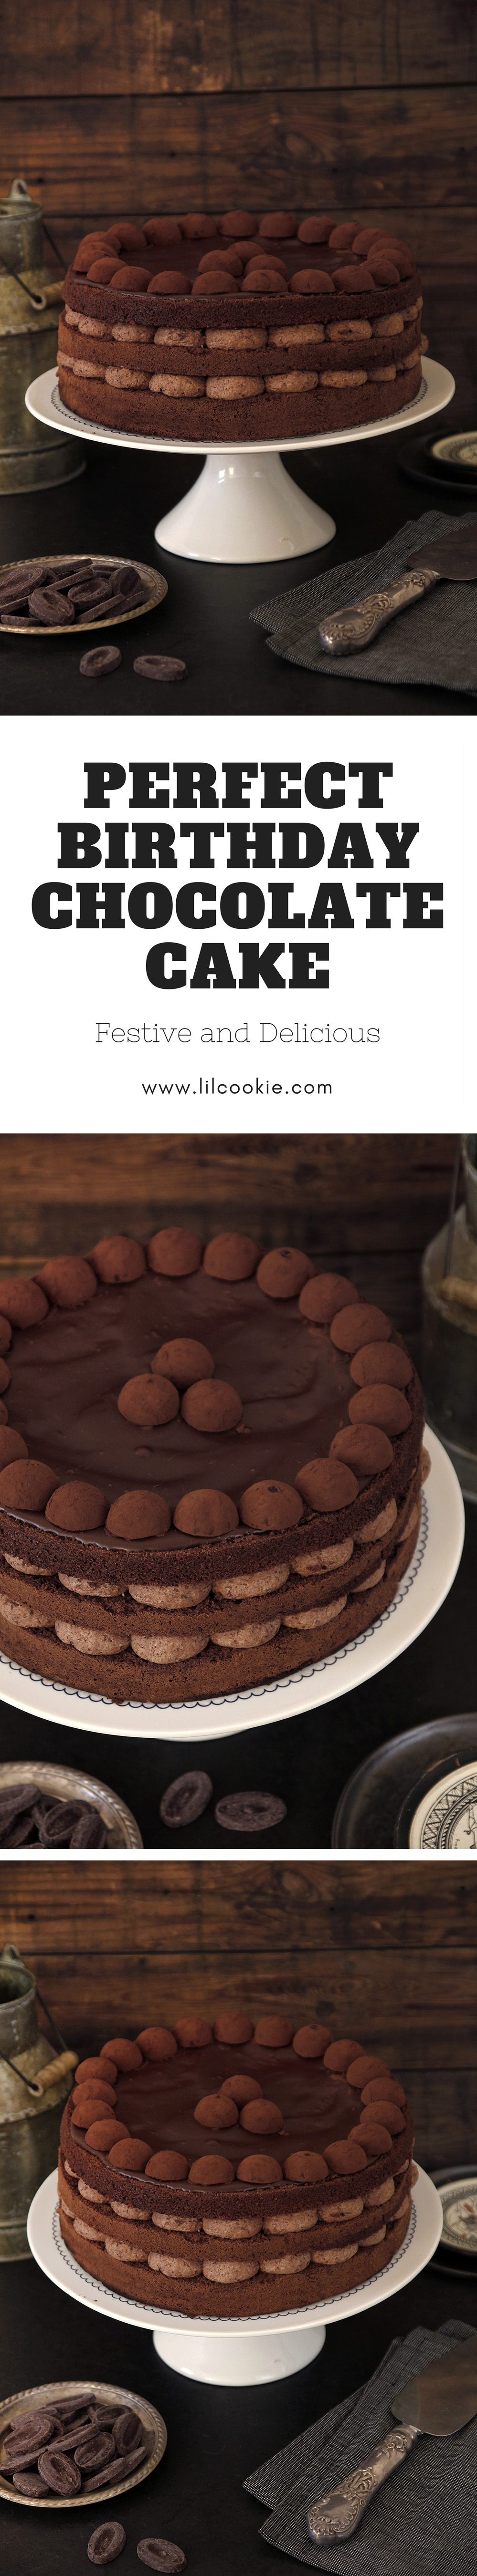 Perfect Birthday Chocolate Cake #chocolate #birthday #cake #recipe 